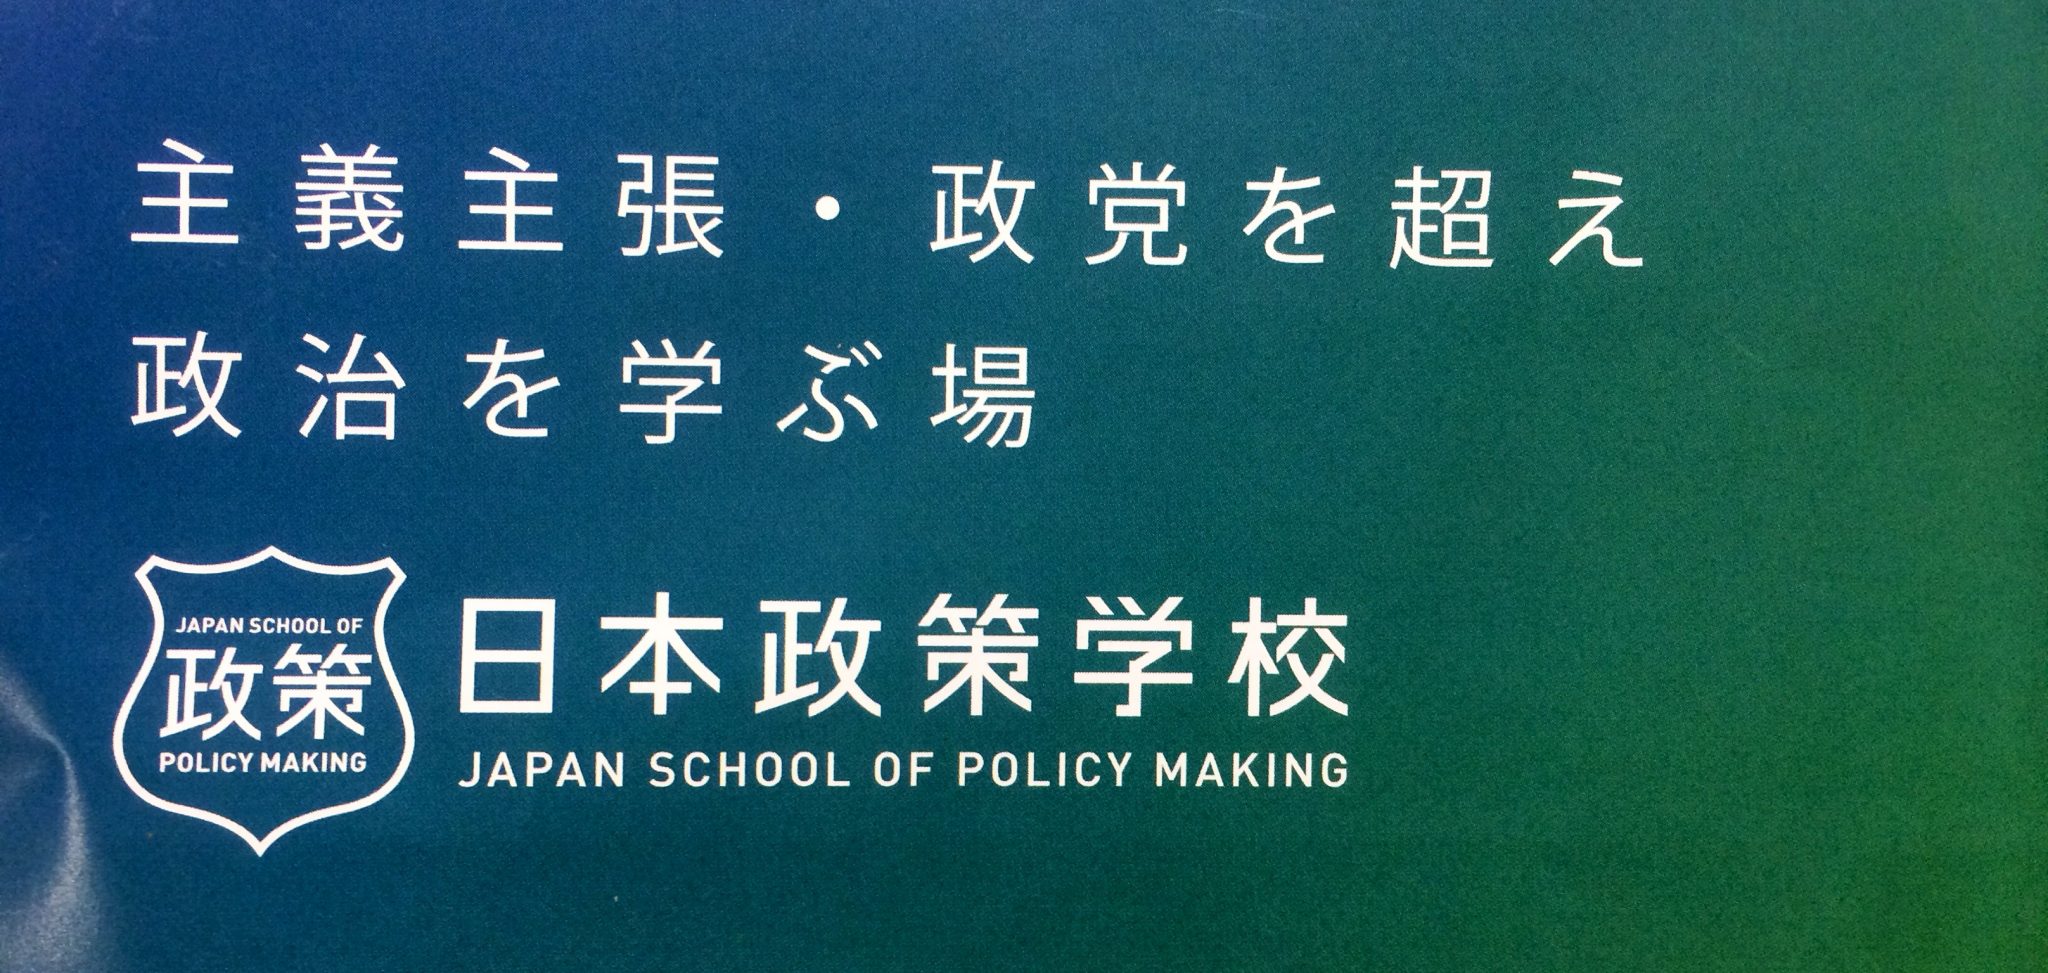 日本政策学校の政策立案コンテスト